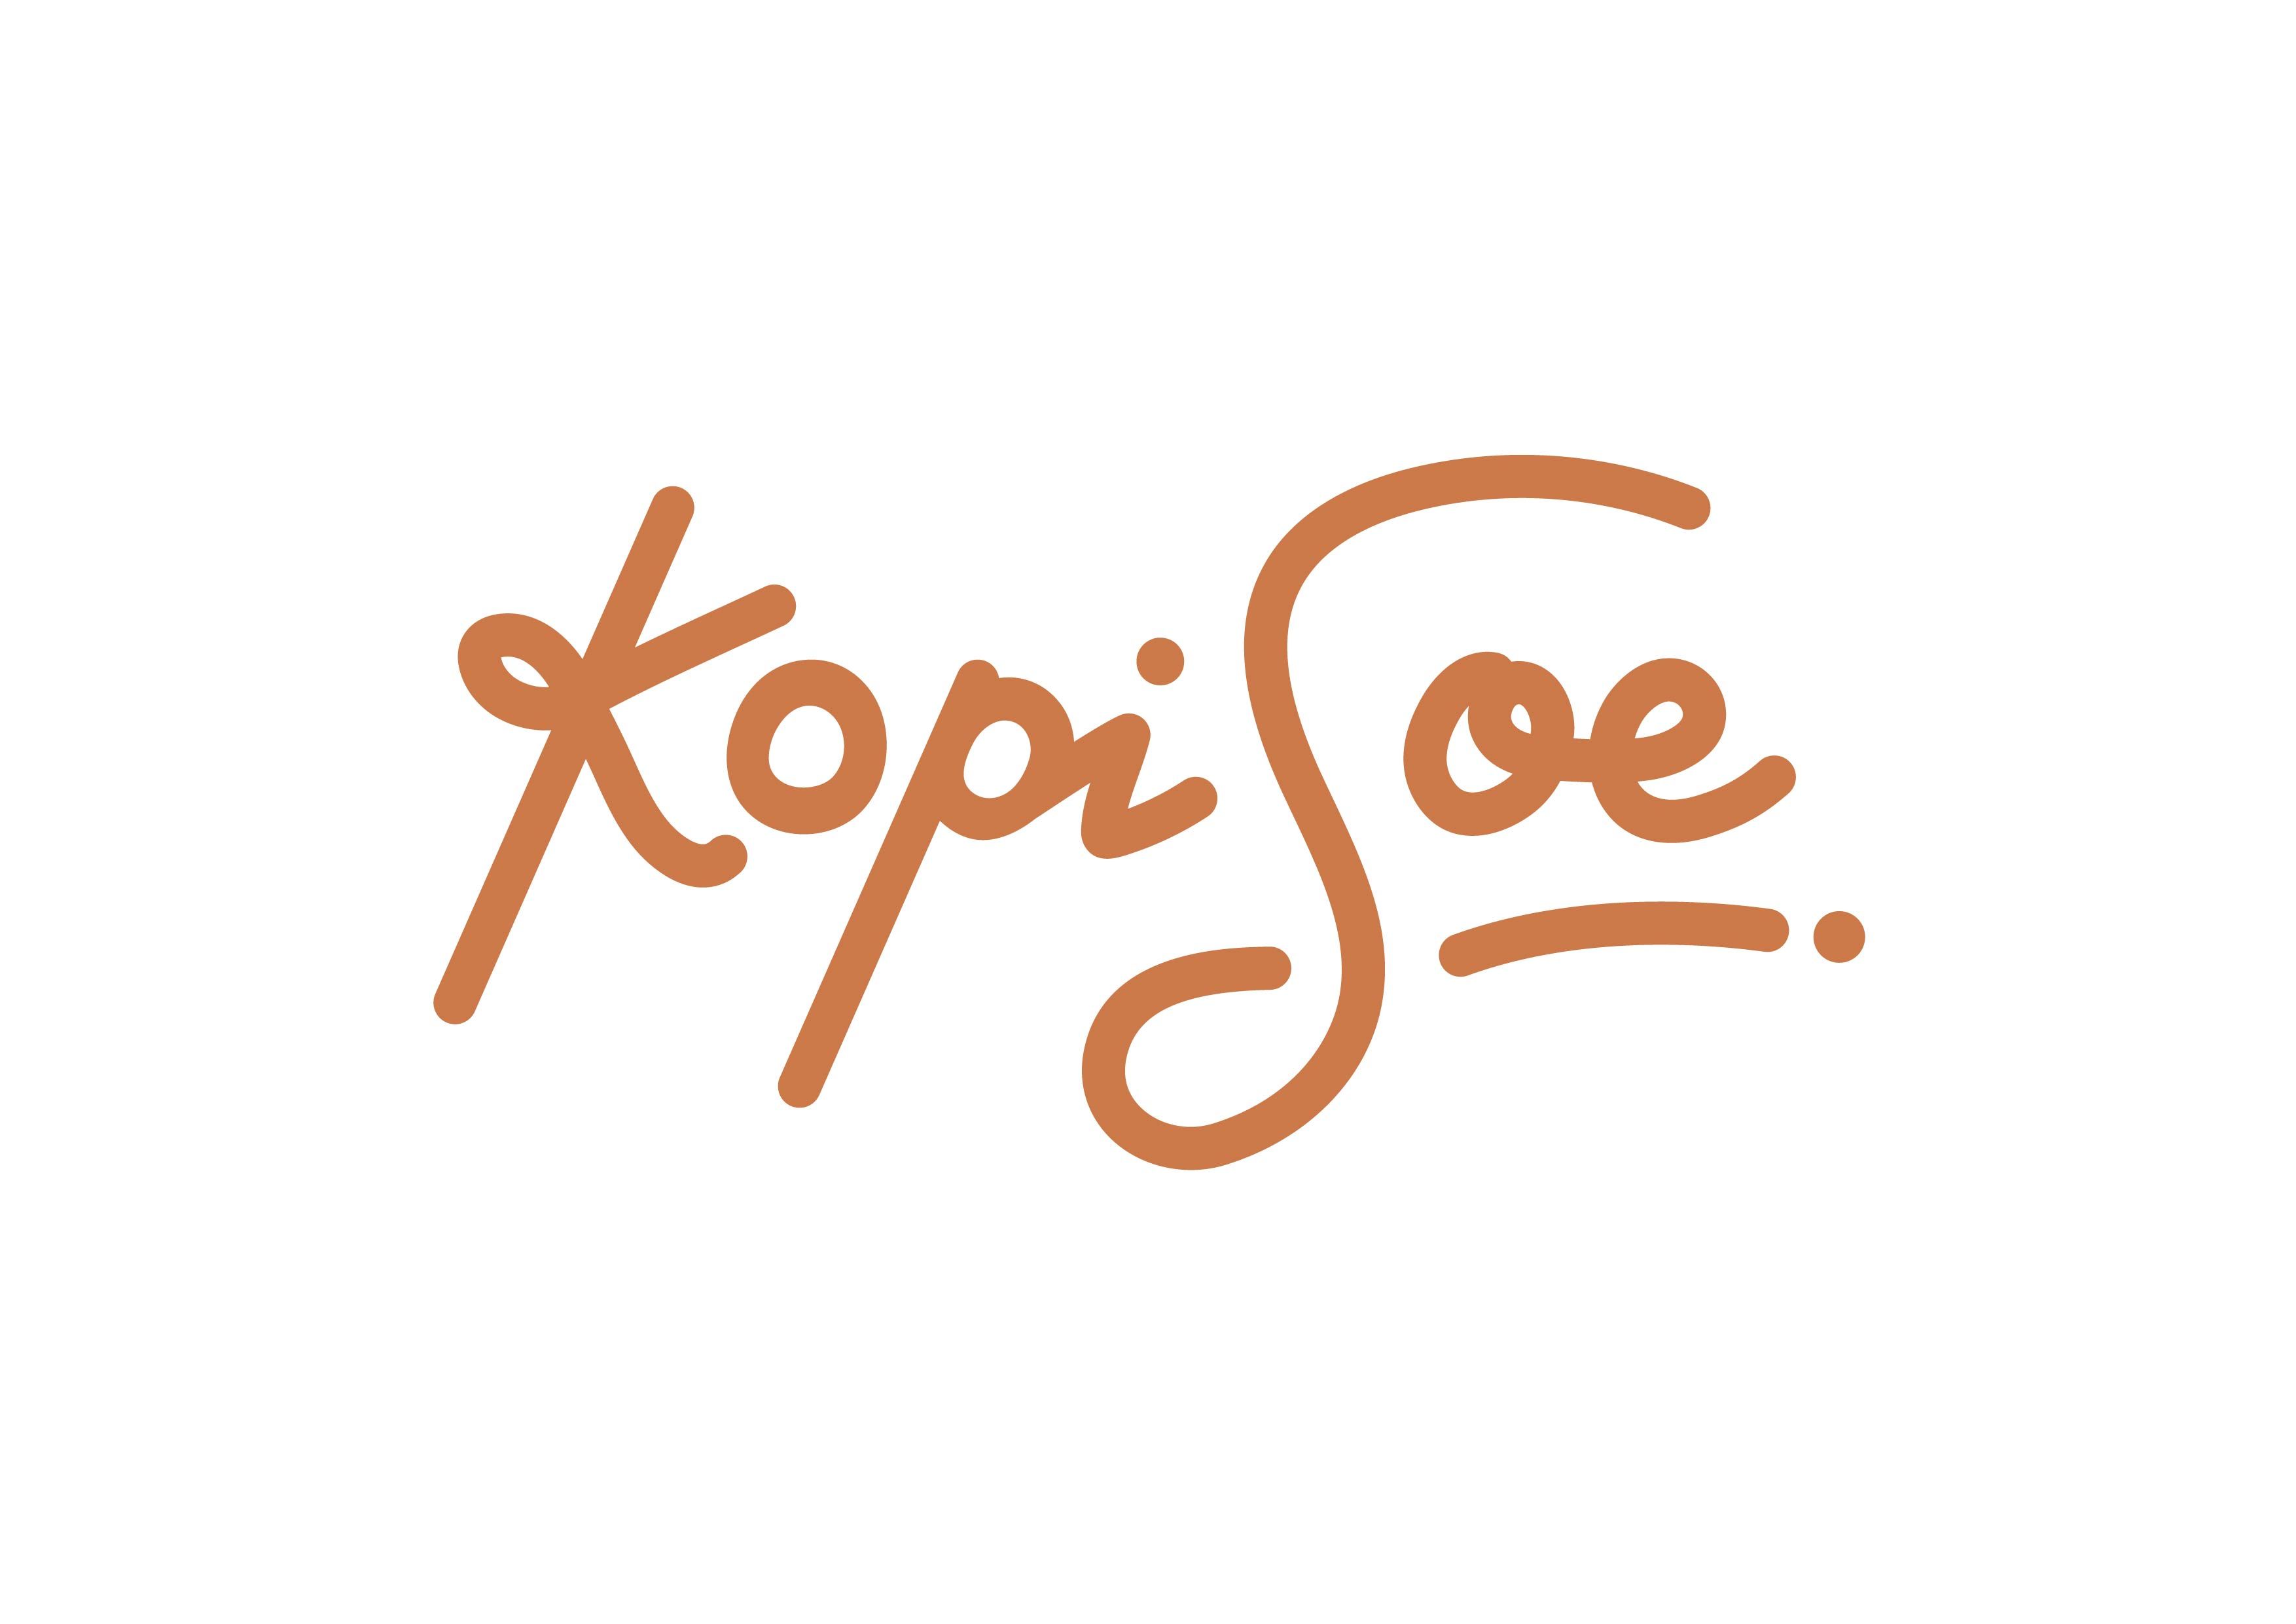 Kopi Soe logo